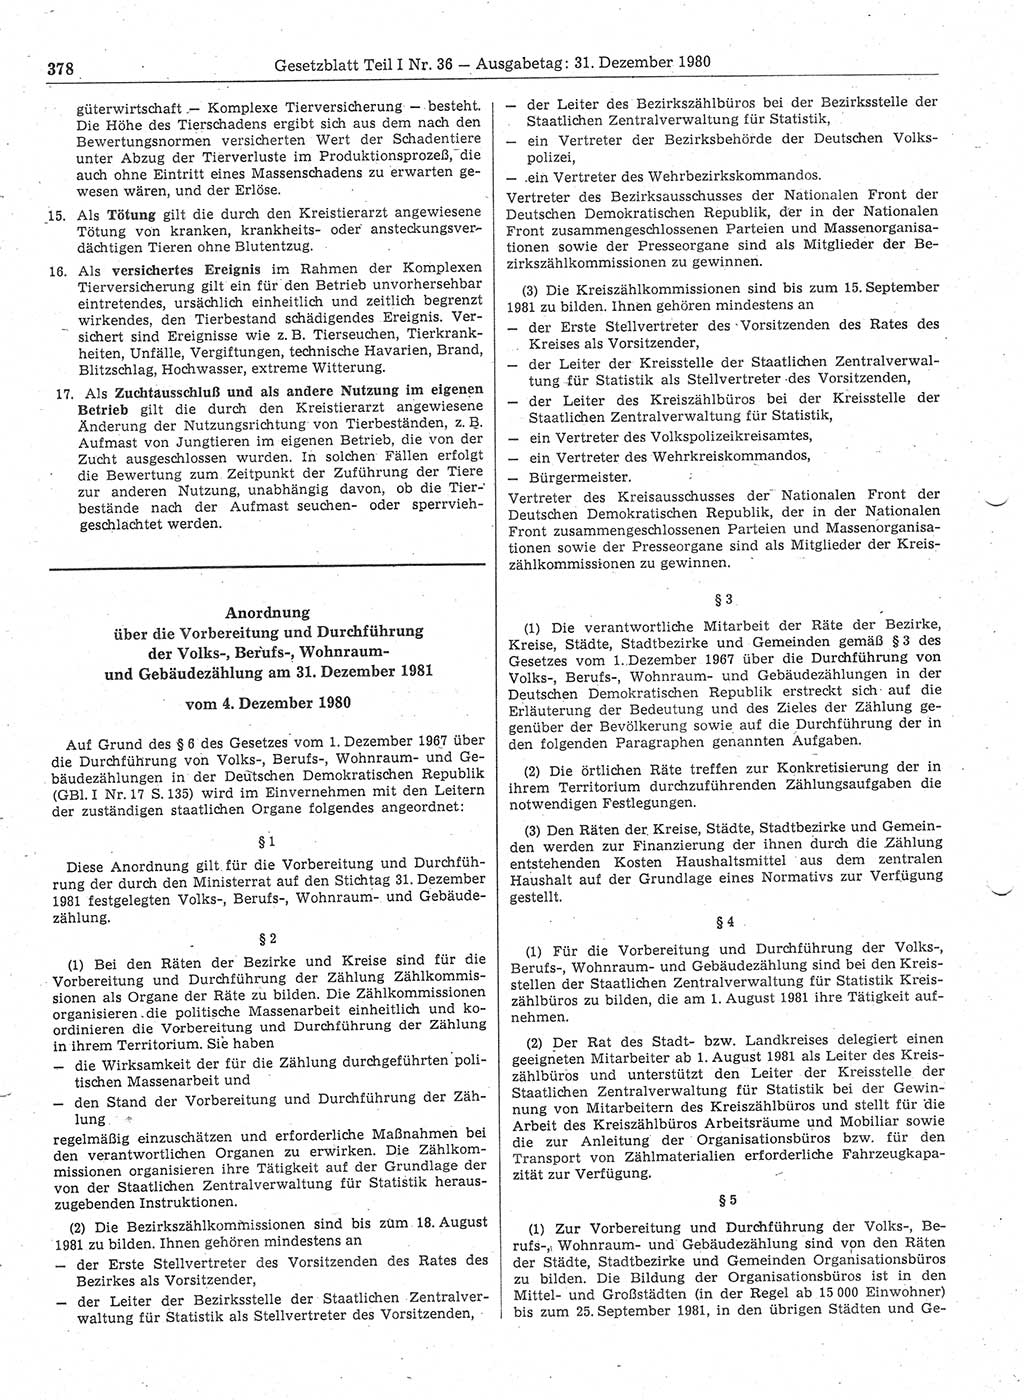 Gesetzblatt (GBl.) der Deutschen Demokratischen Republik (DDR) Teil Ⅰ 1980, Seite 378 (GBl. DDR Ⅰ 1980, S. 378)